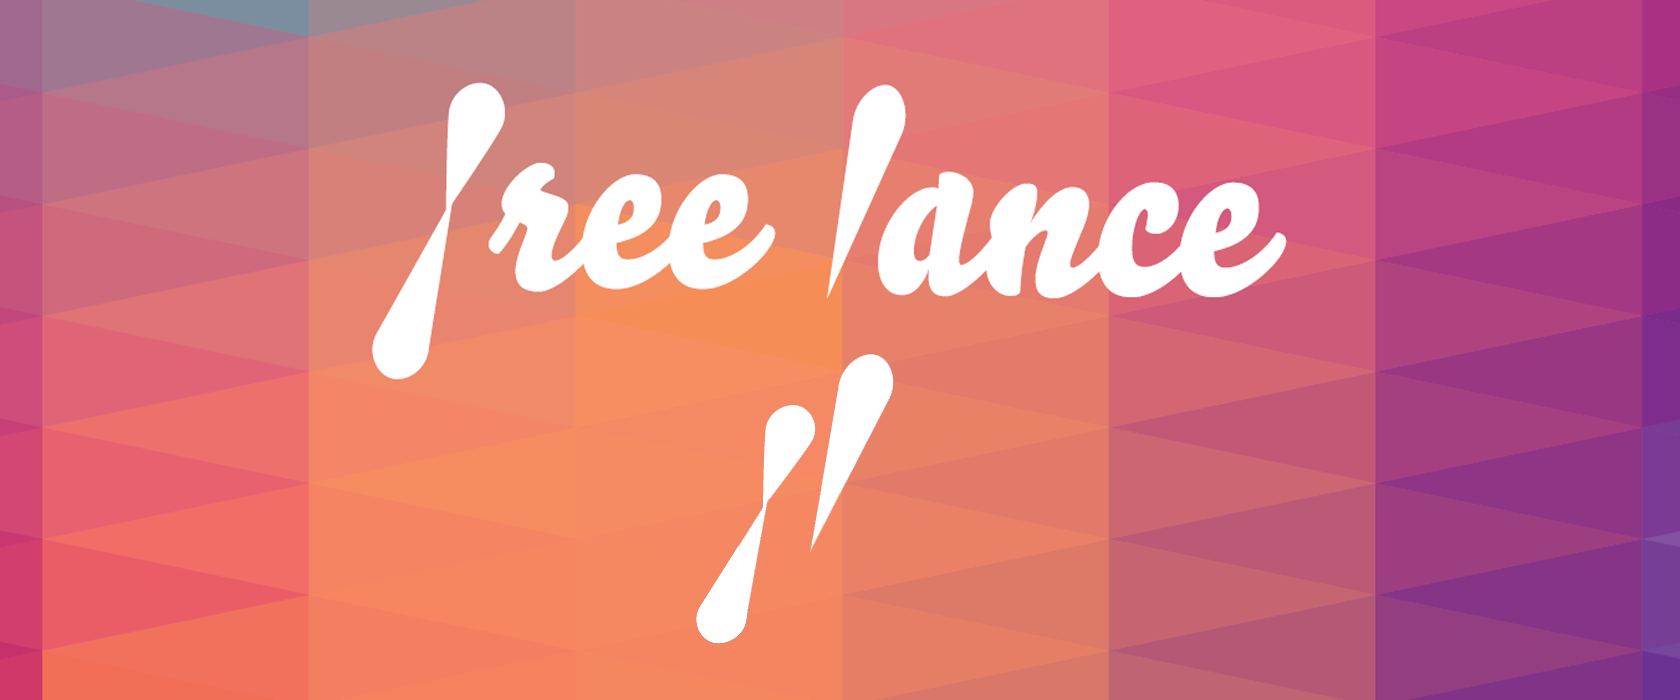 Free Lance Eyewear